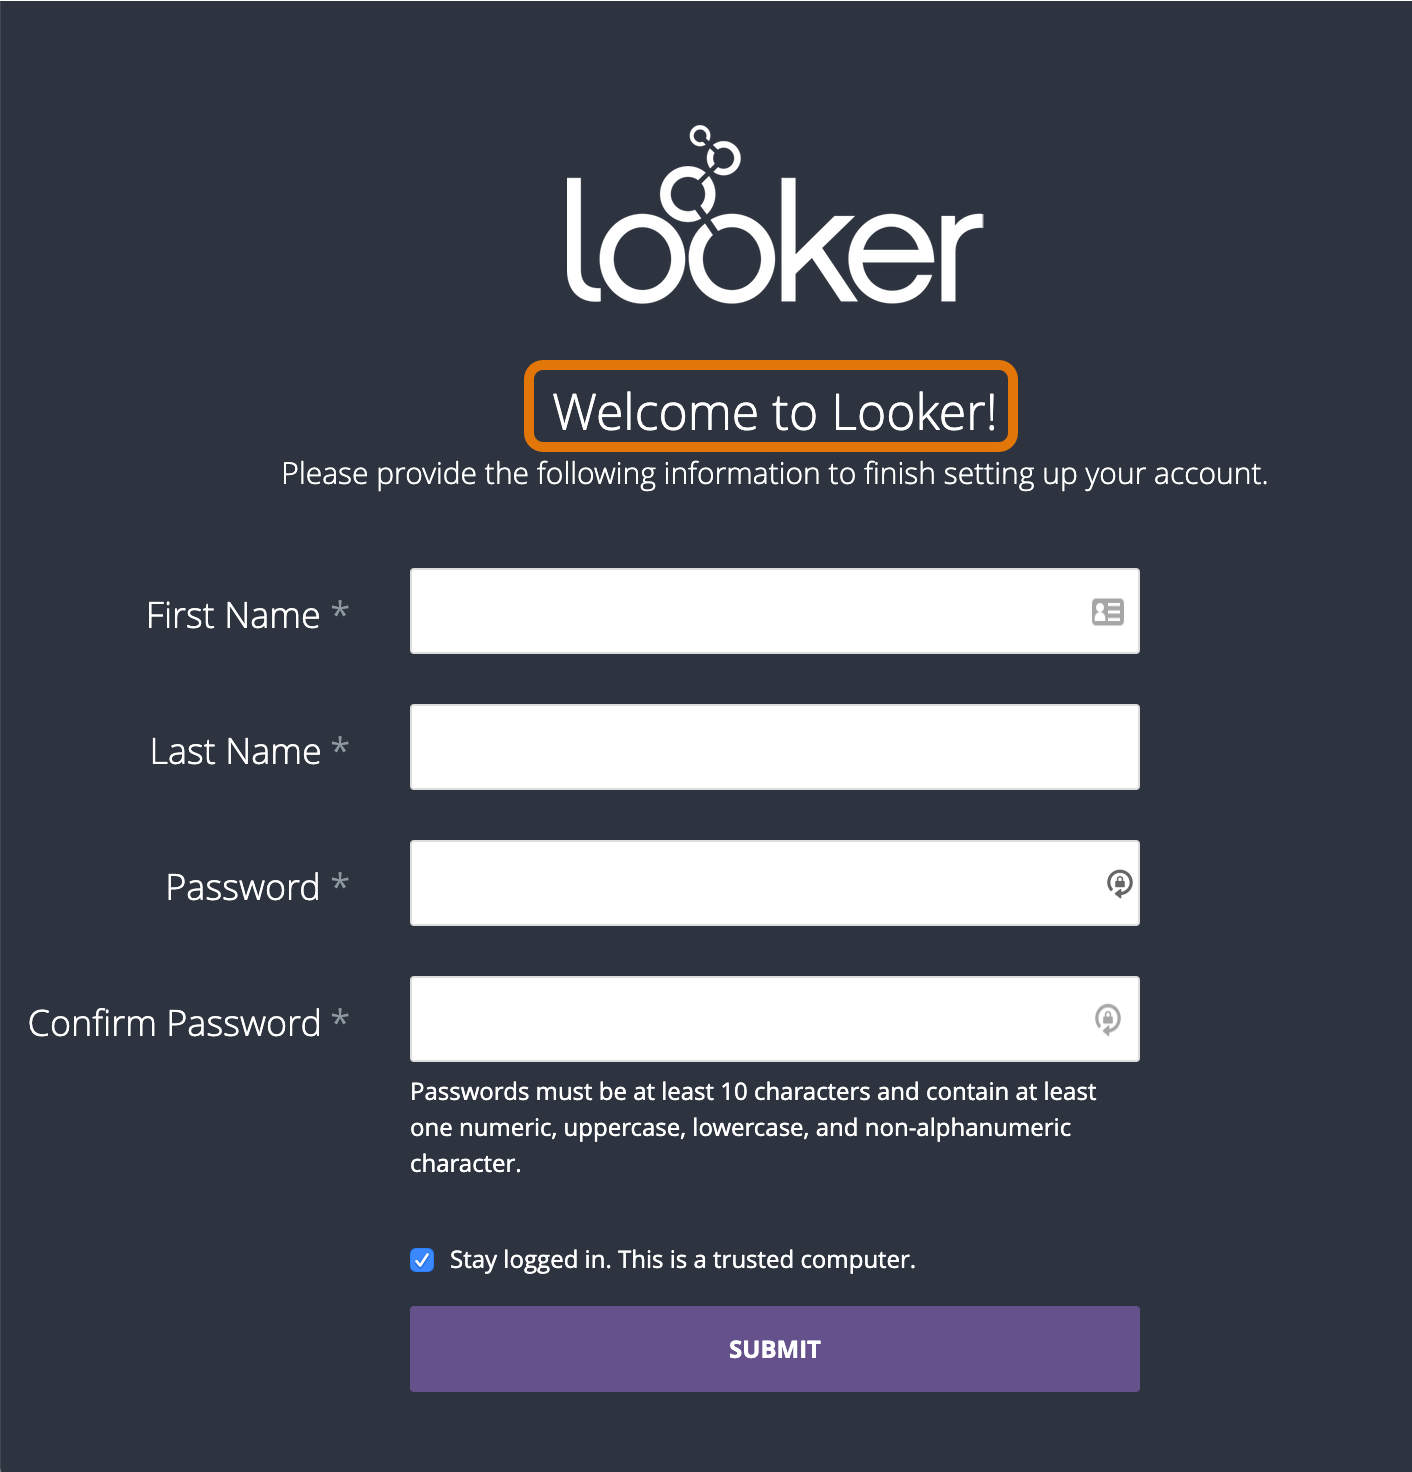 Looker 帐号设置页面的屏幕截图。页面顶部有一个 Looker 徽标，后面紧跟着“Welcome to Looker!”字样。